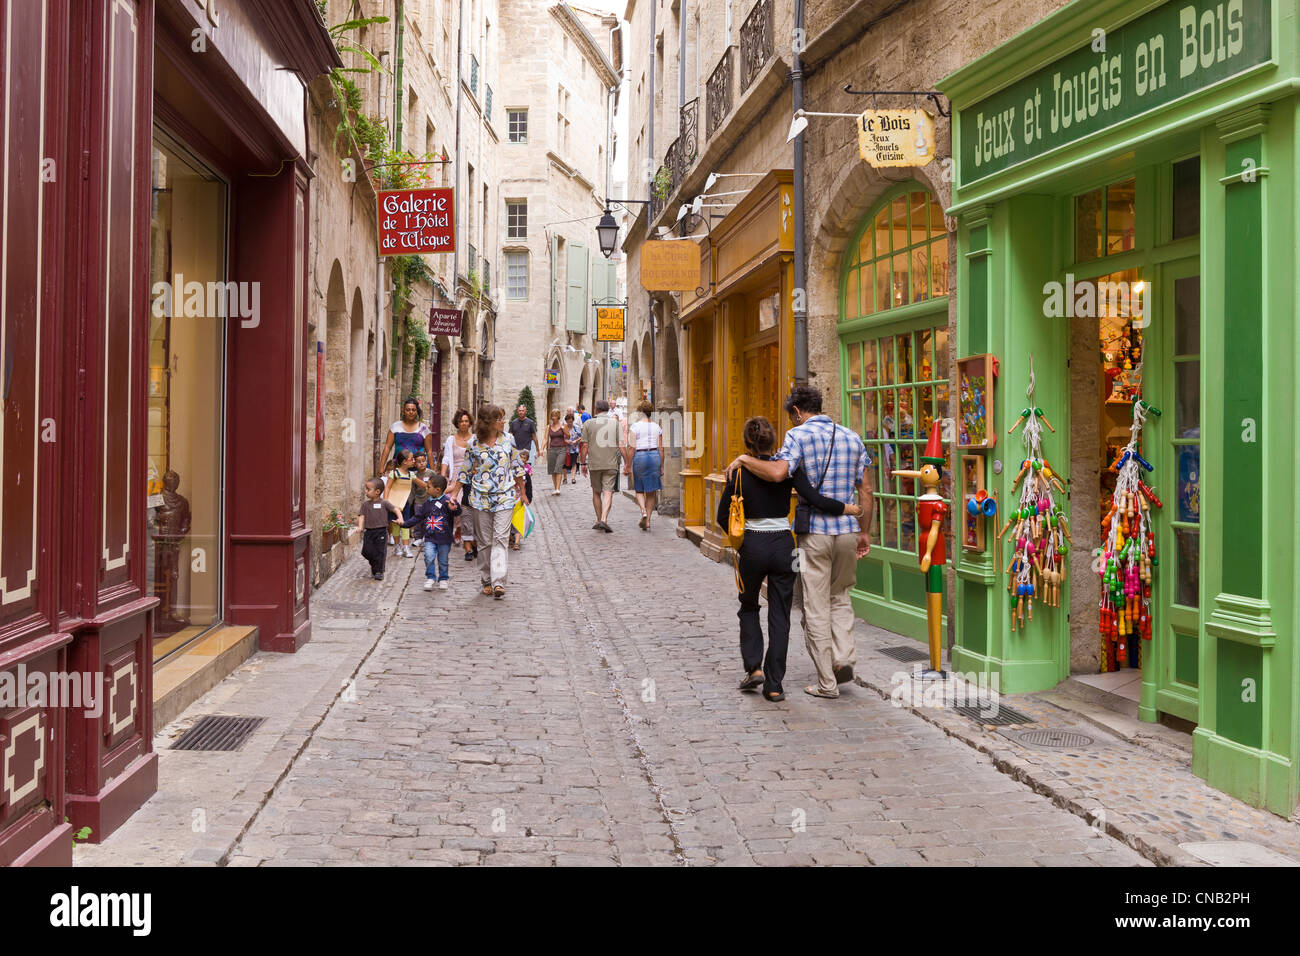 Francia, Herault, Pezenas, callejón peatonal y sus tiendas Foto de stock